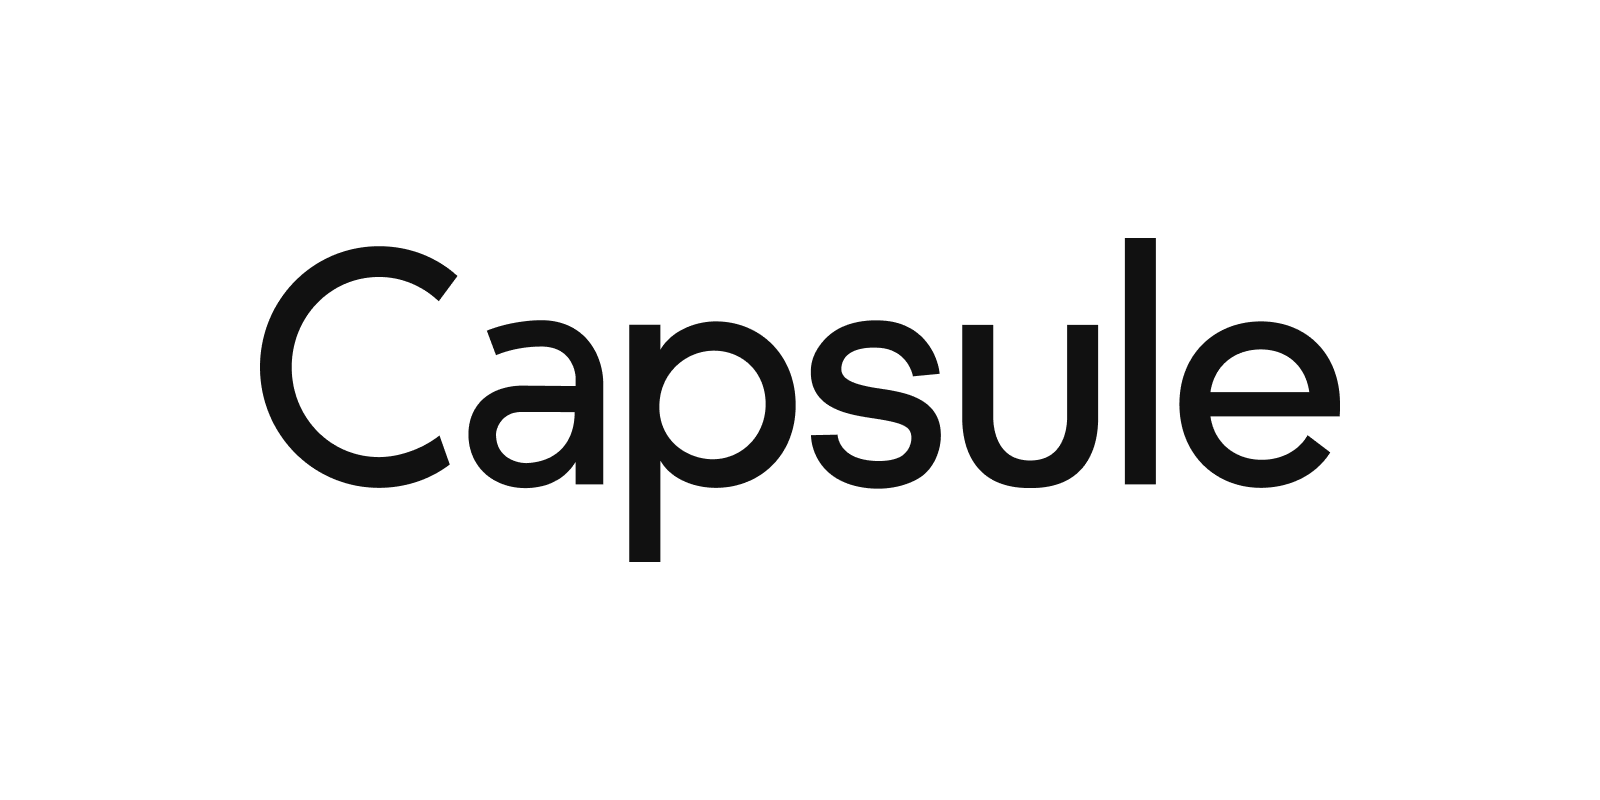 capsule crm logo